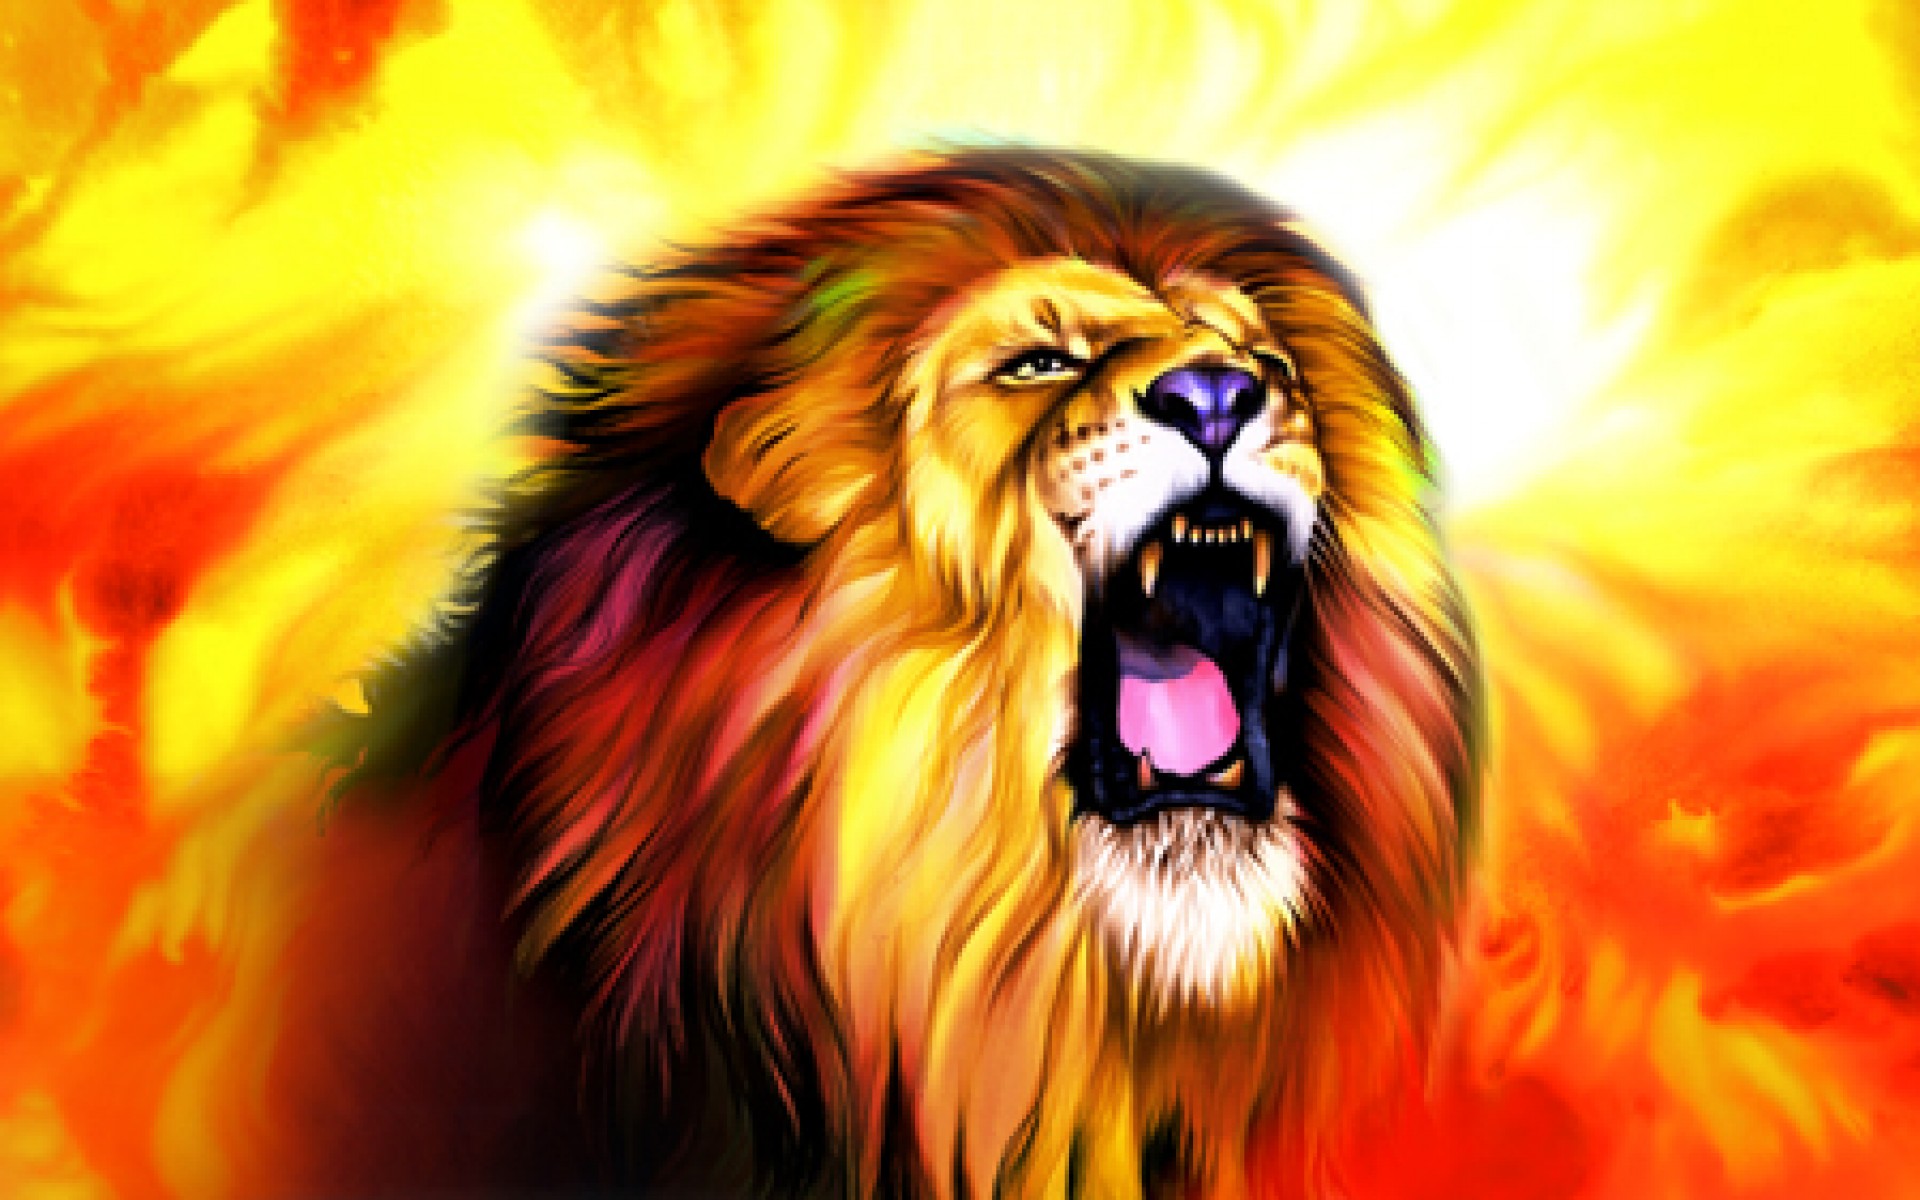 94+] Lion Roar Wallpapers - WallpaperSafari